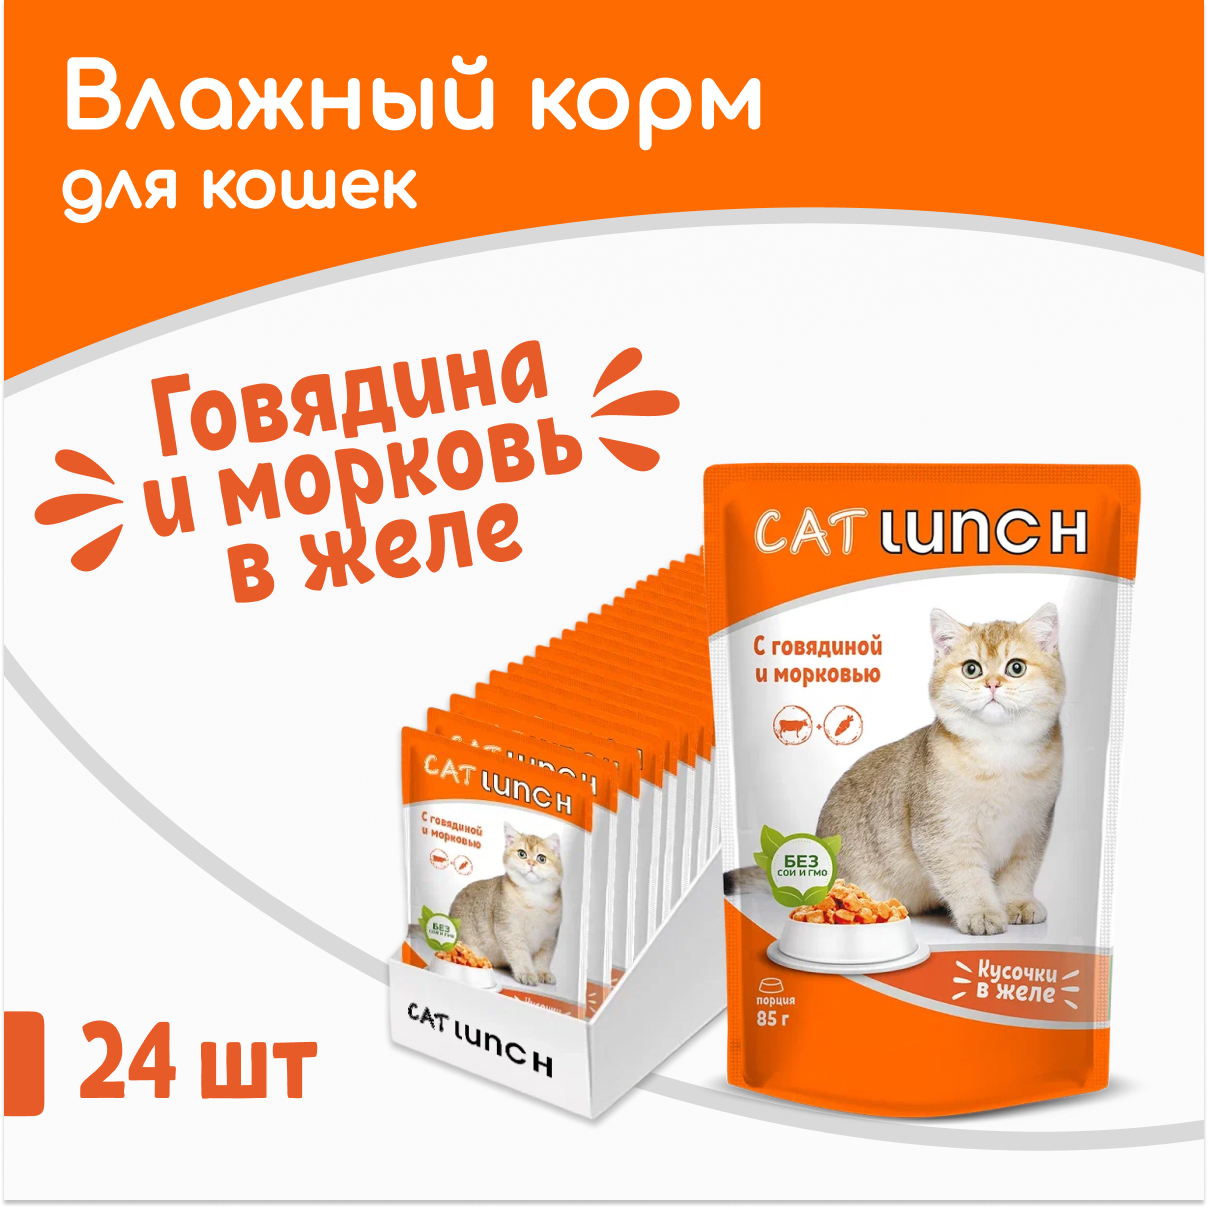 Влажный корм для кошек Cat Lunch говядина и морковь, 24шт по 85г